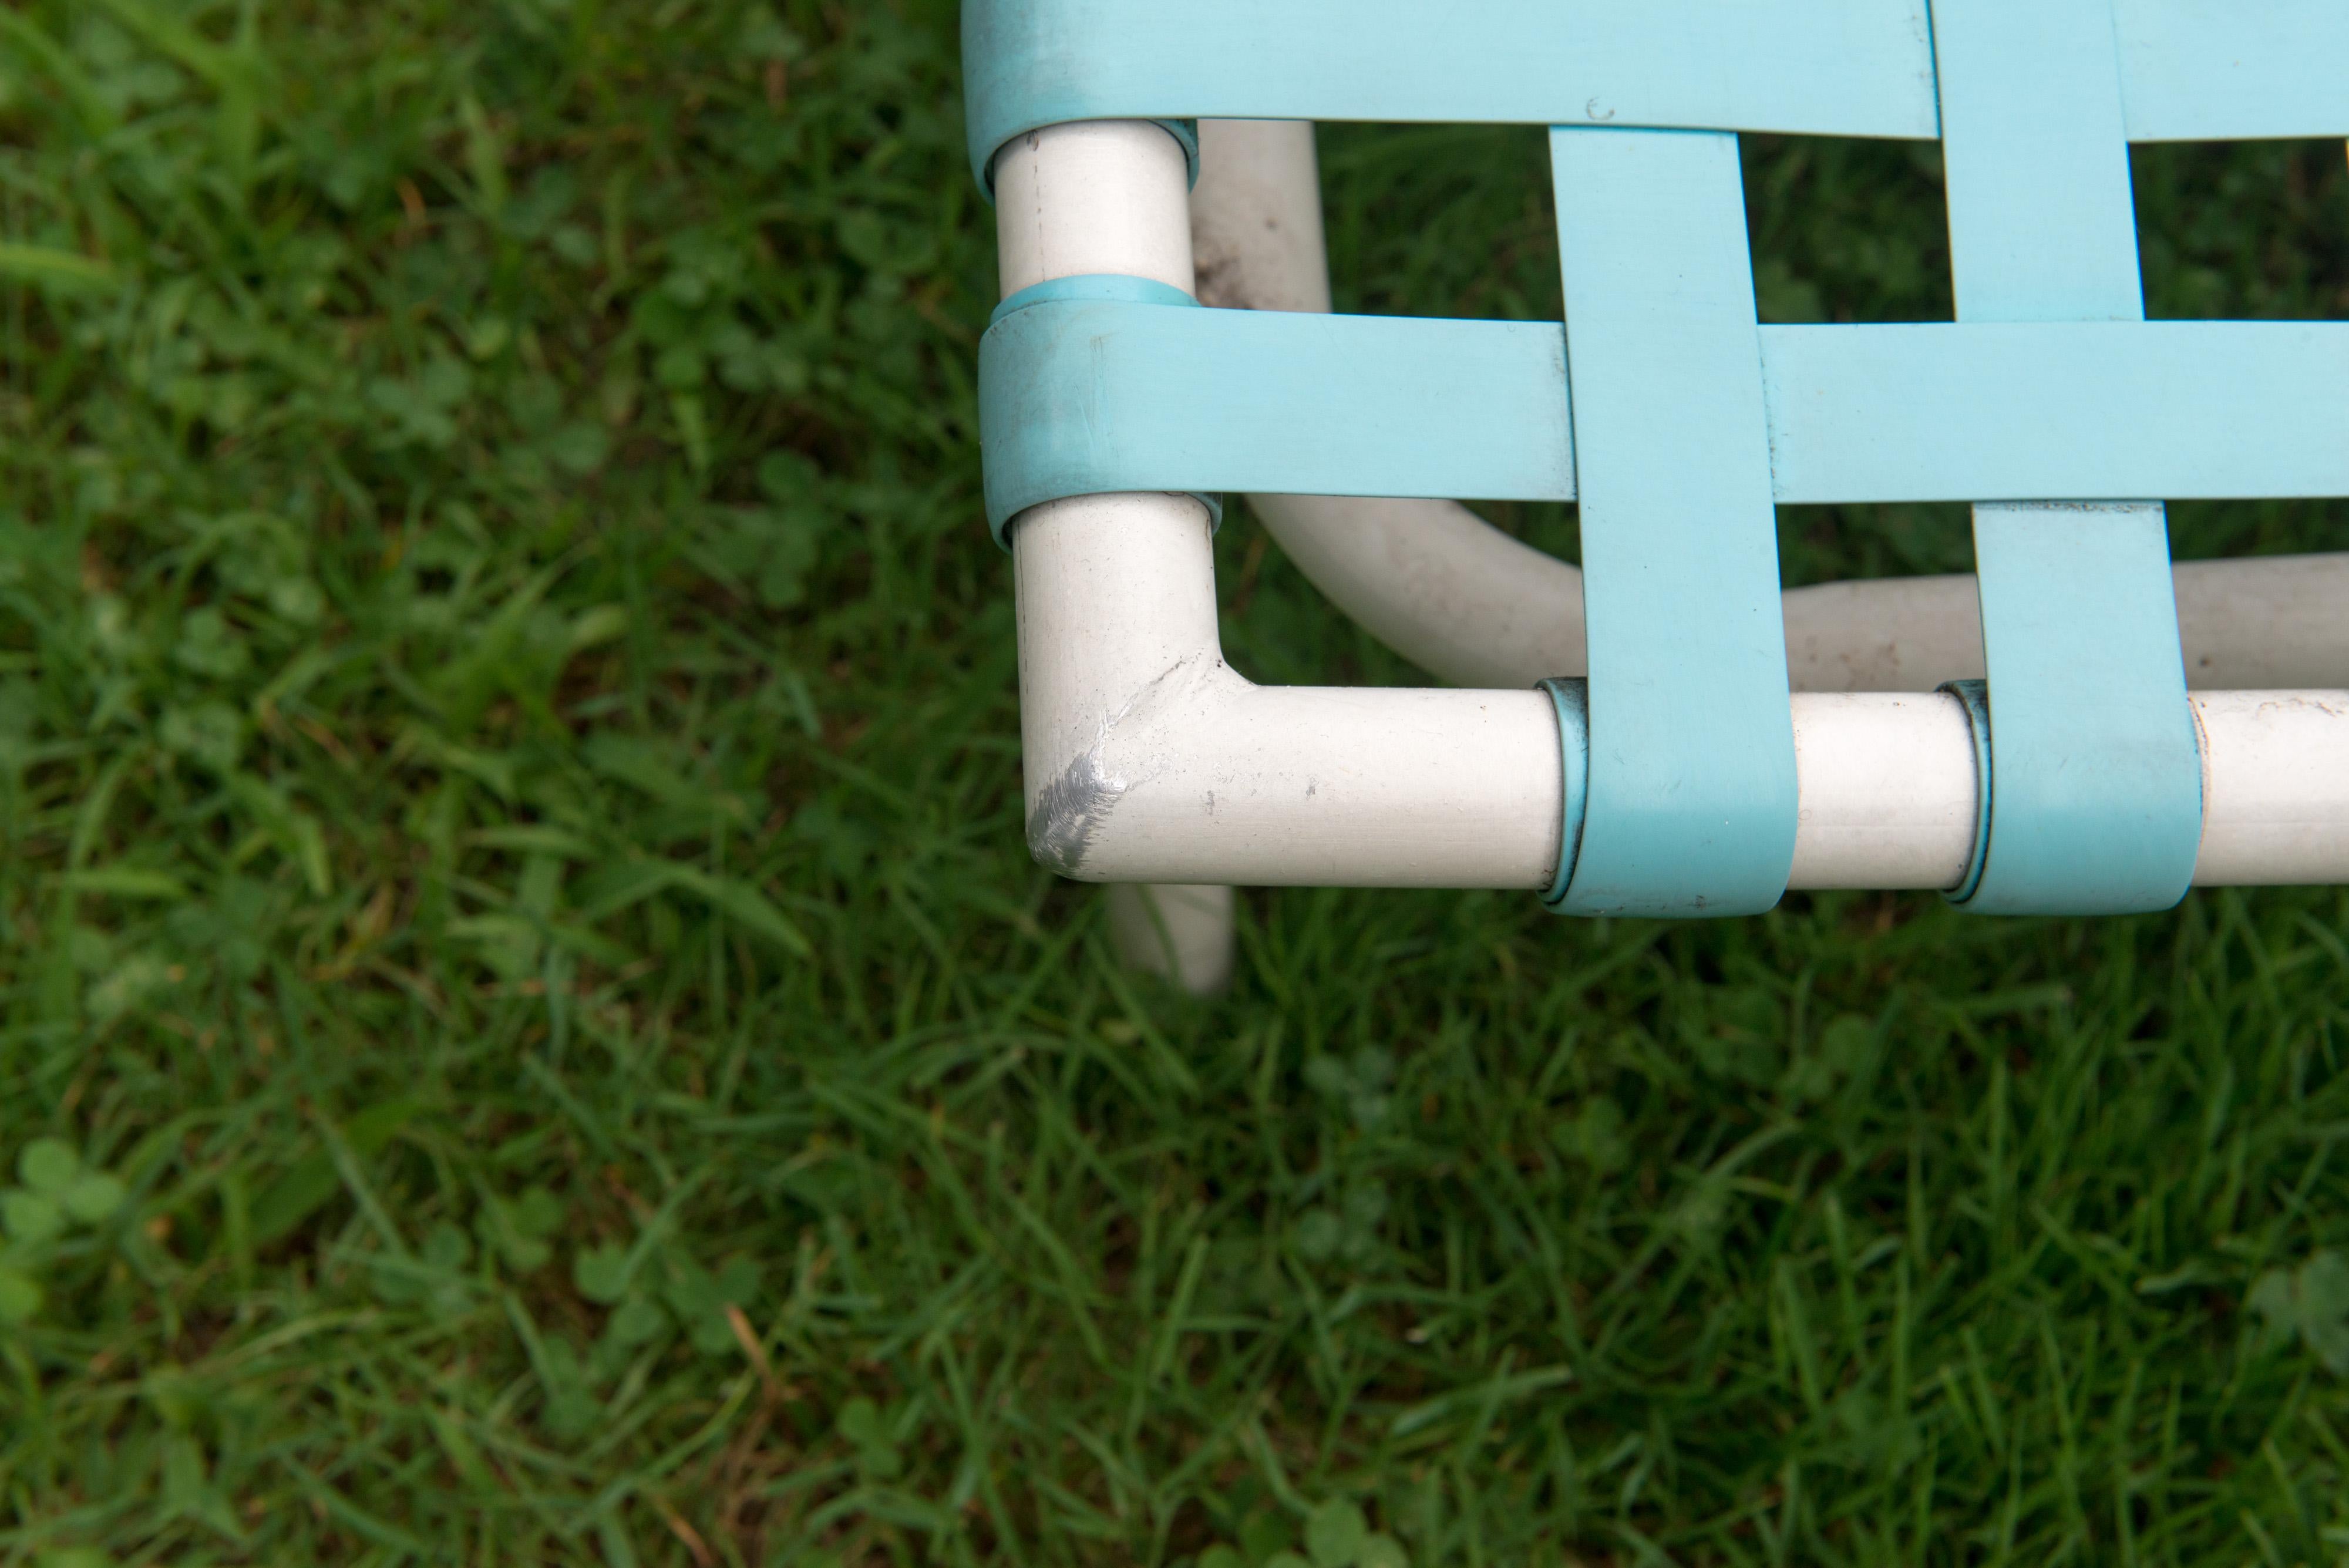 Chaise longue Tropitone en vinyle turquoise et aluminium peint par poudrage blanc, années 1960
Autres articles assortis vendus séparément : Spectaculaire table et quatre chaises avec un superbe parapluie en toile frangée multicolore, chariot